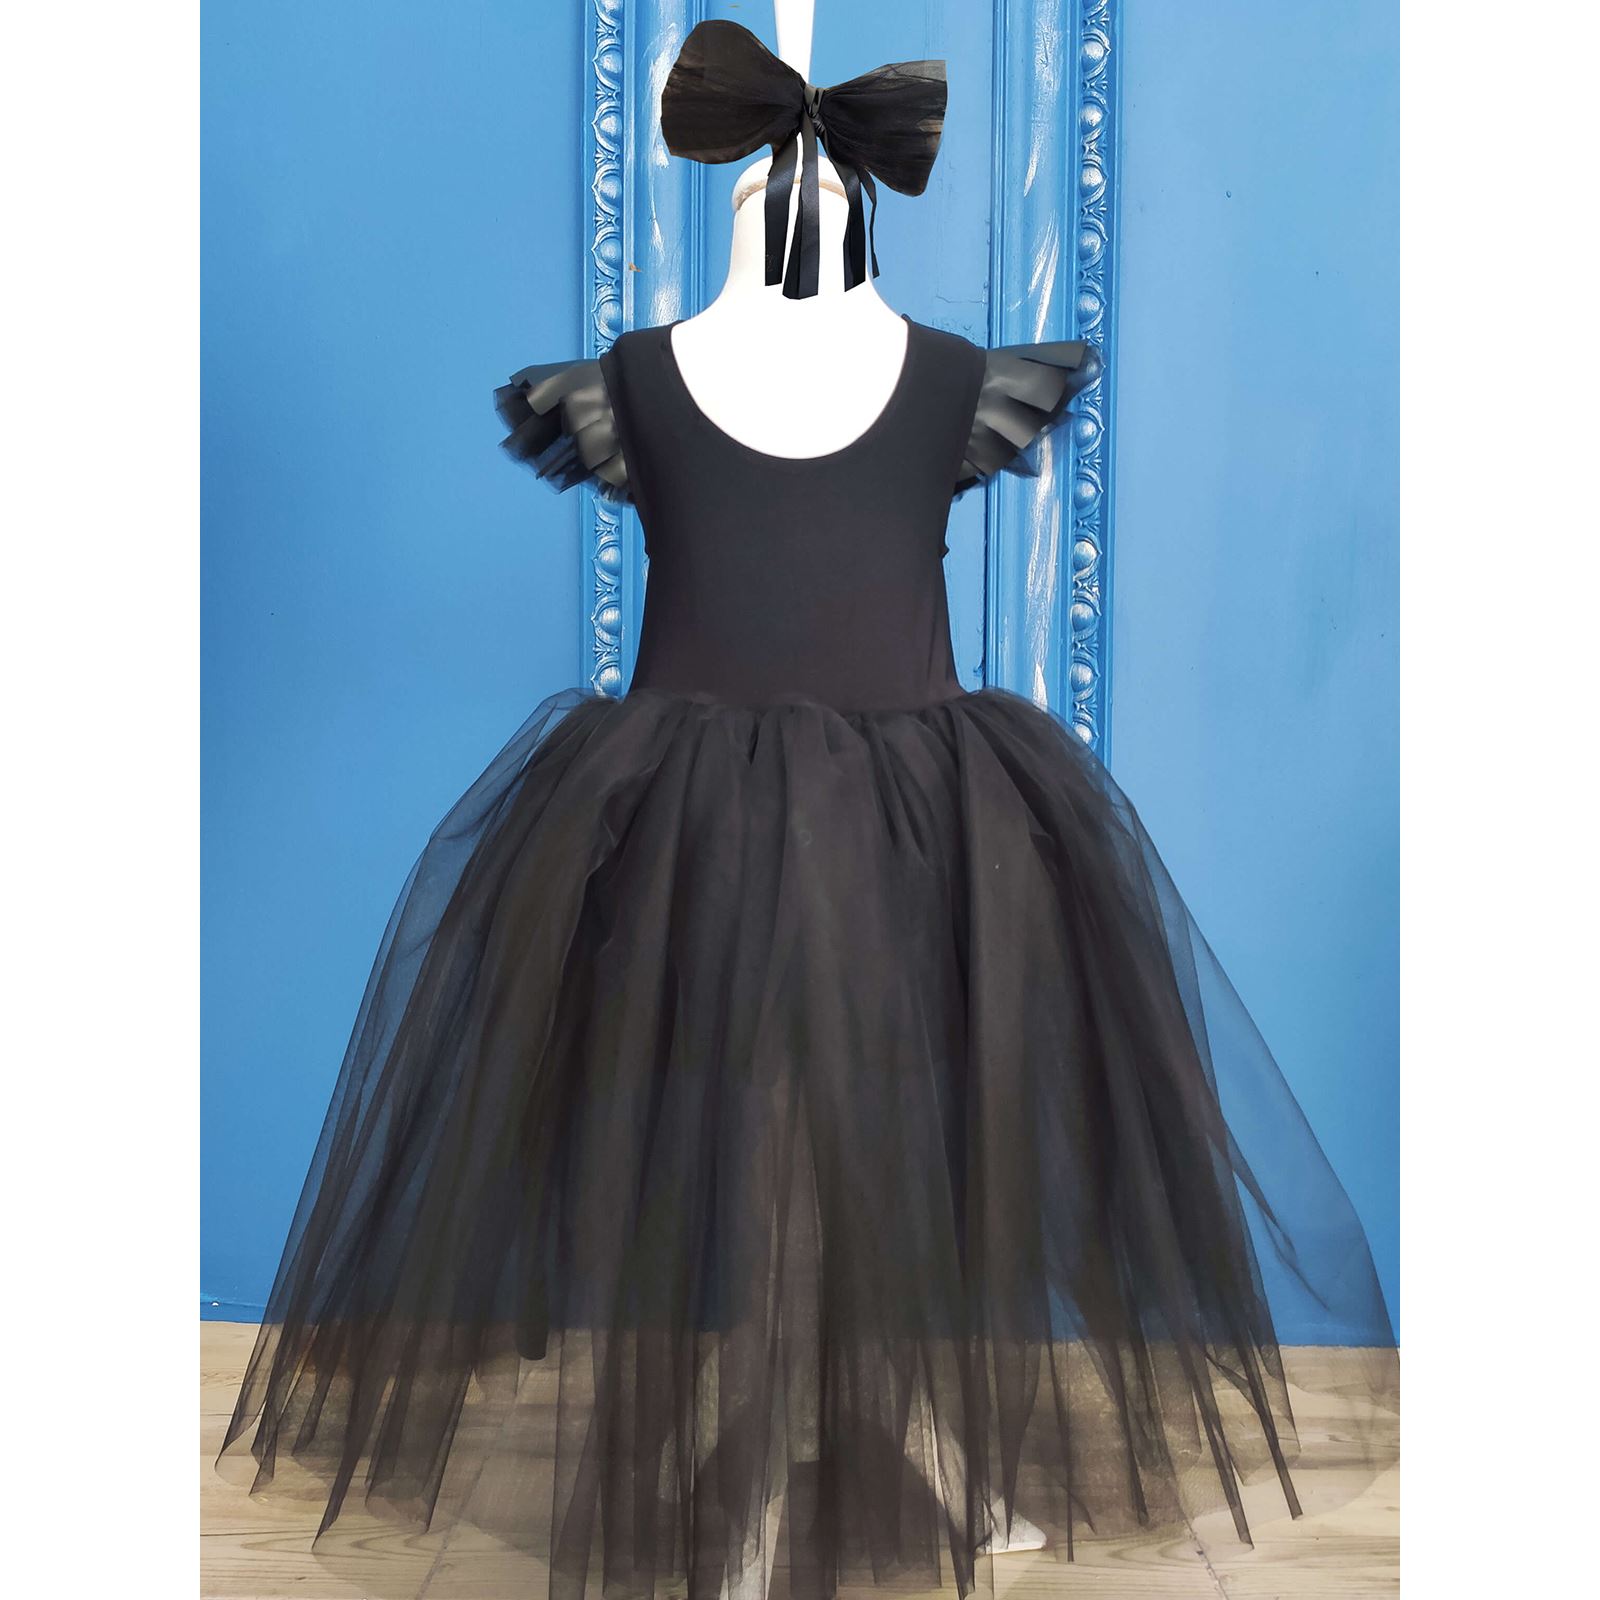 Shecco Babba Deri Detaylı Tütü Kız Çocuk Doğum Günü Elbisesi ve Bandana Takım, Çocuk Abiye Elbise 6-10 Yaş Abiye Siyah